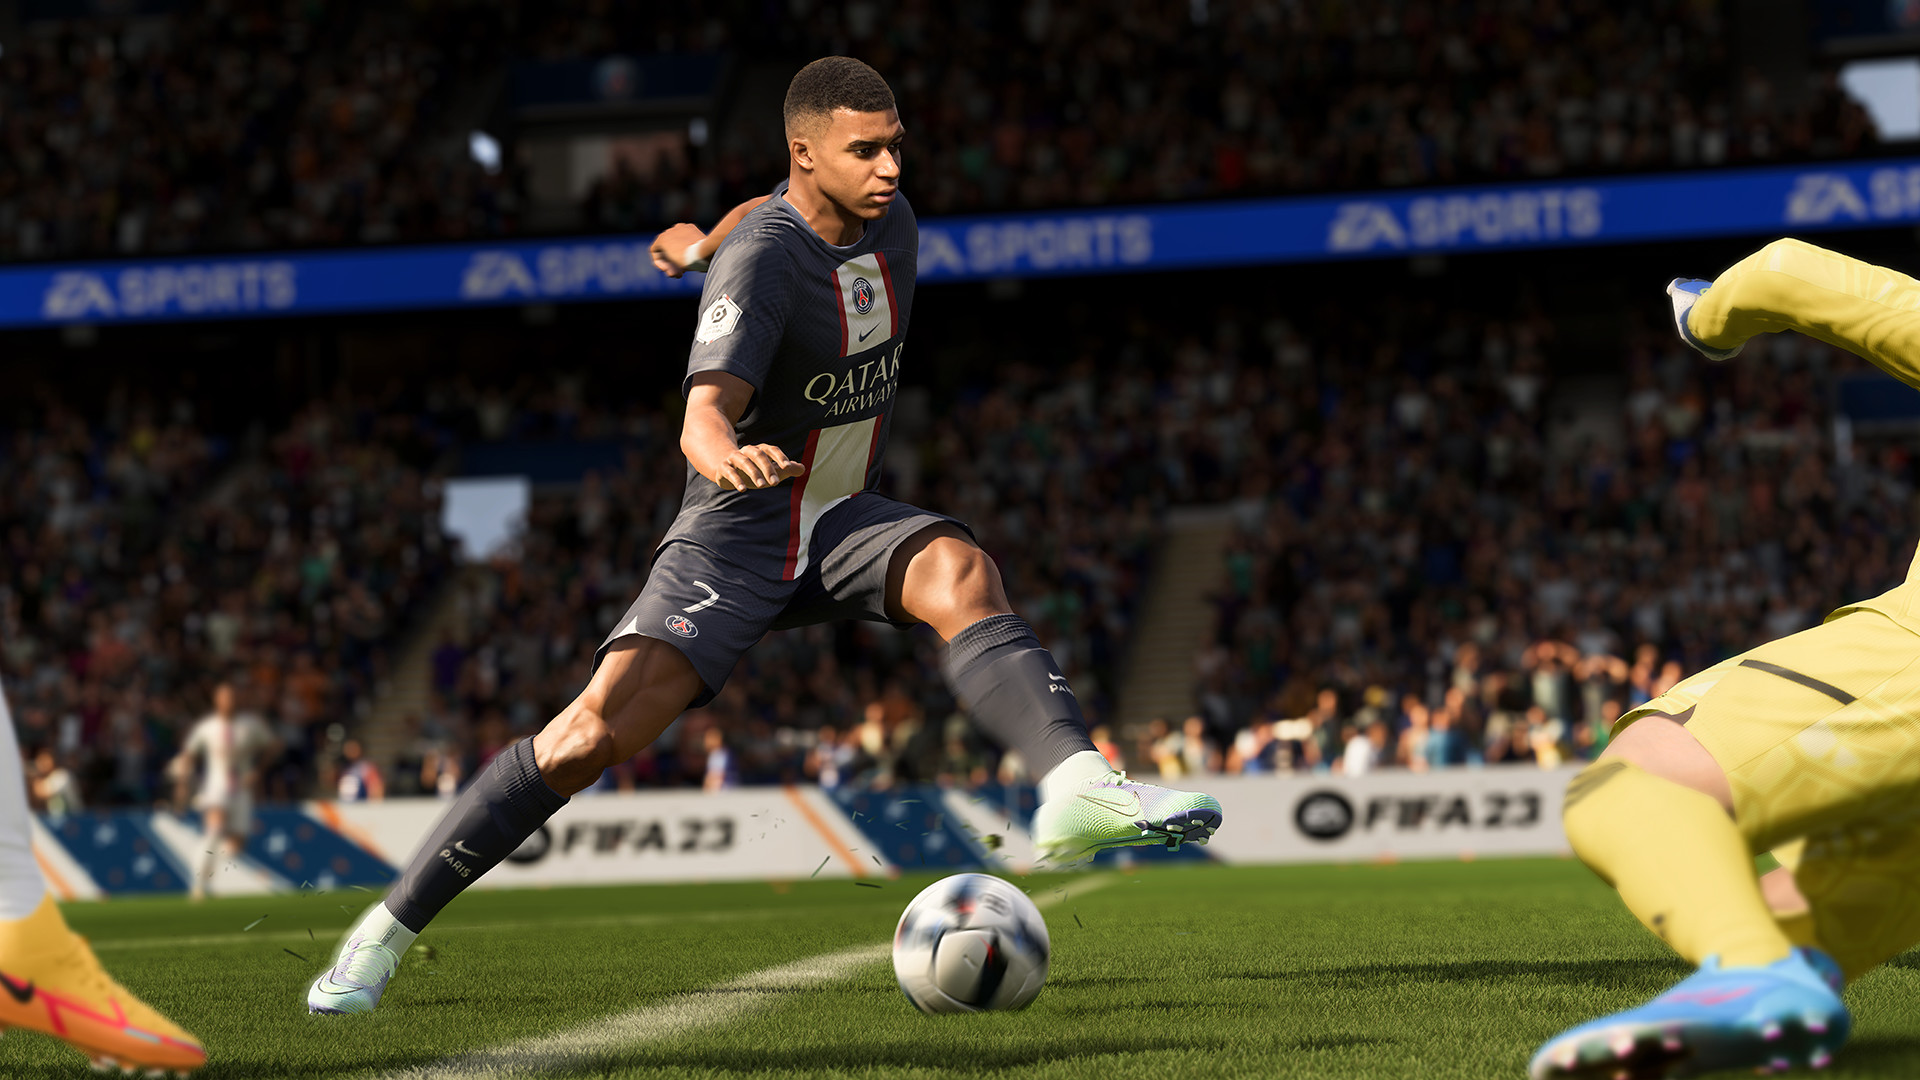 ¿Cómo marcar un gol fácil en FIFA 23?